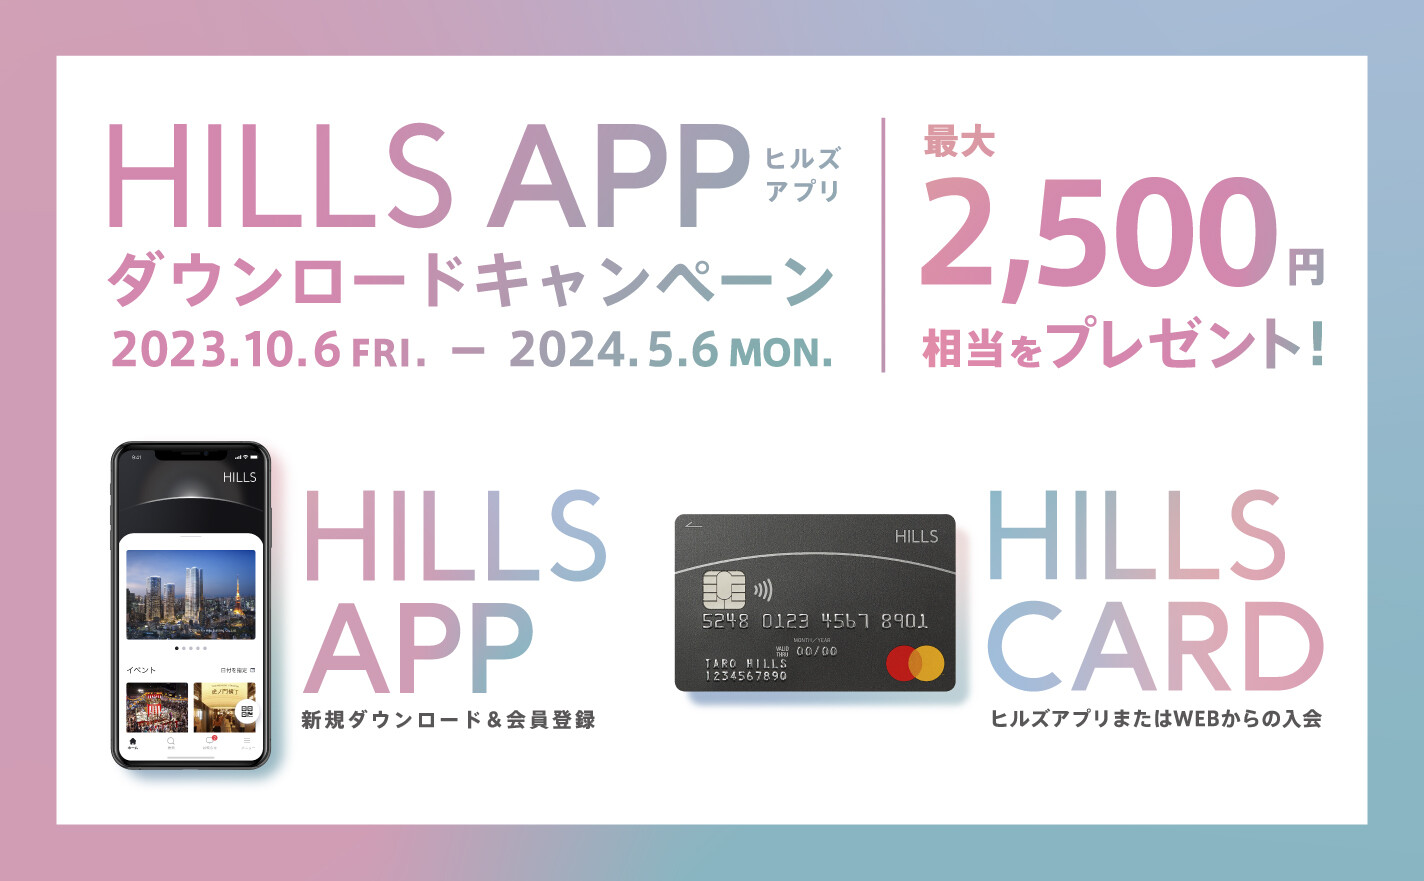 HILLS APP/HILLS CARD - ヒルズアプリ/ヒルズカード